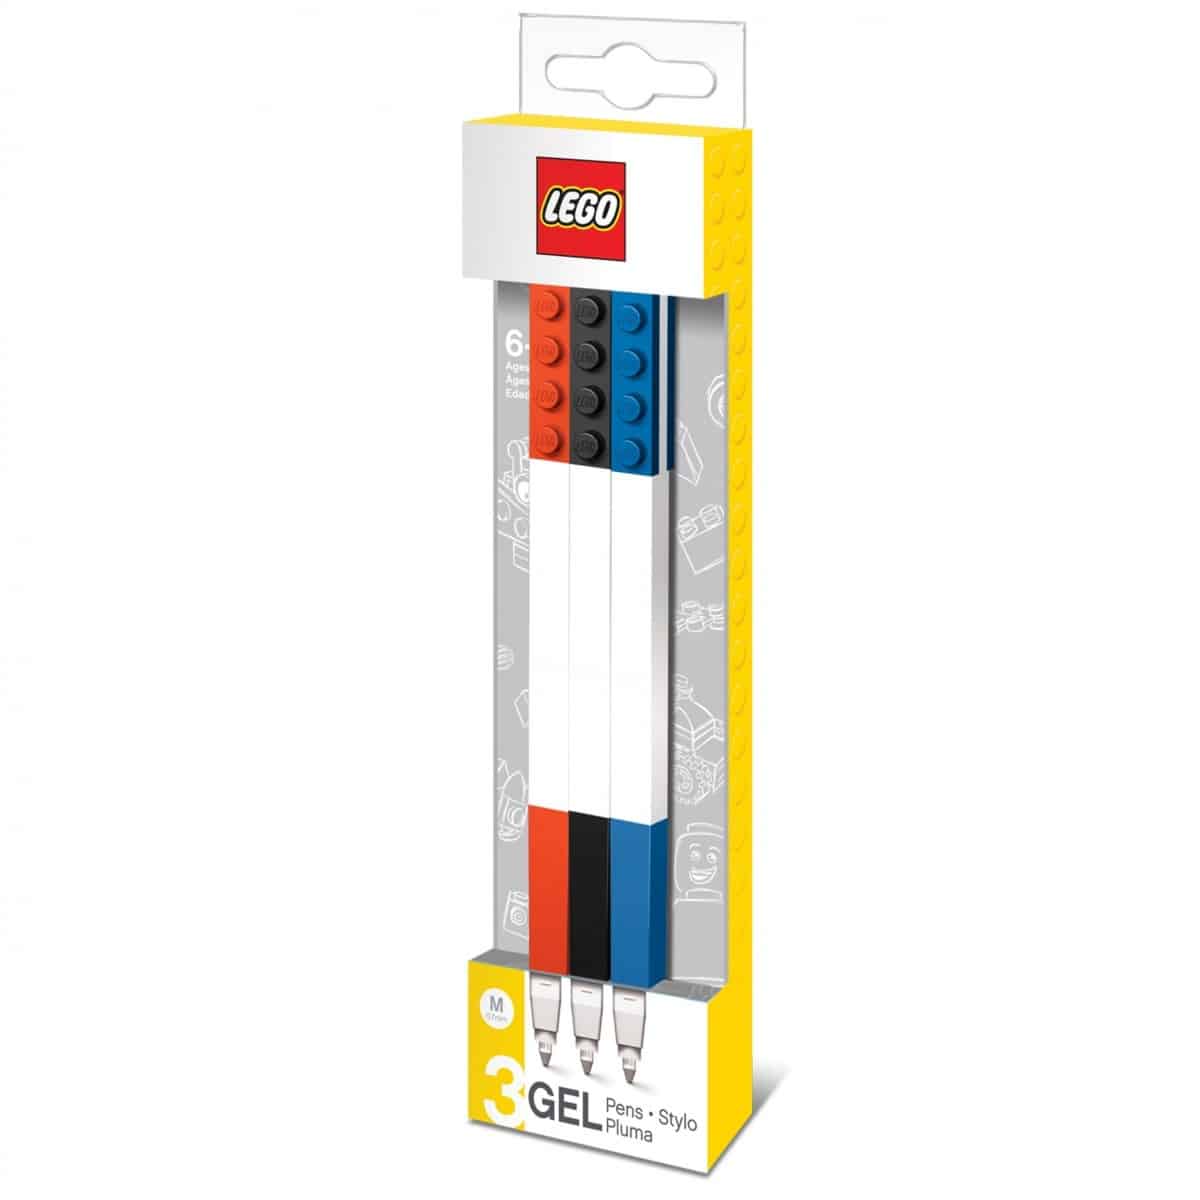 lego 5005109 3 pack gel pen set scaled